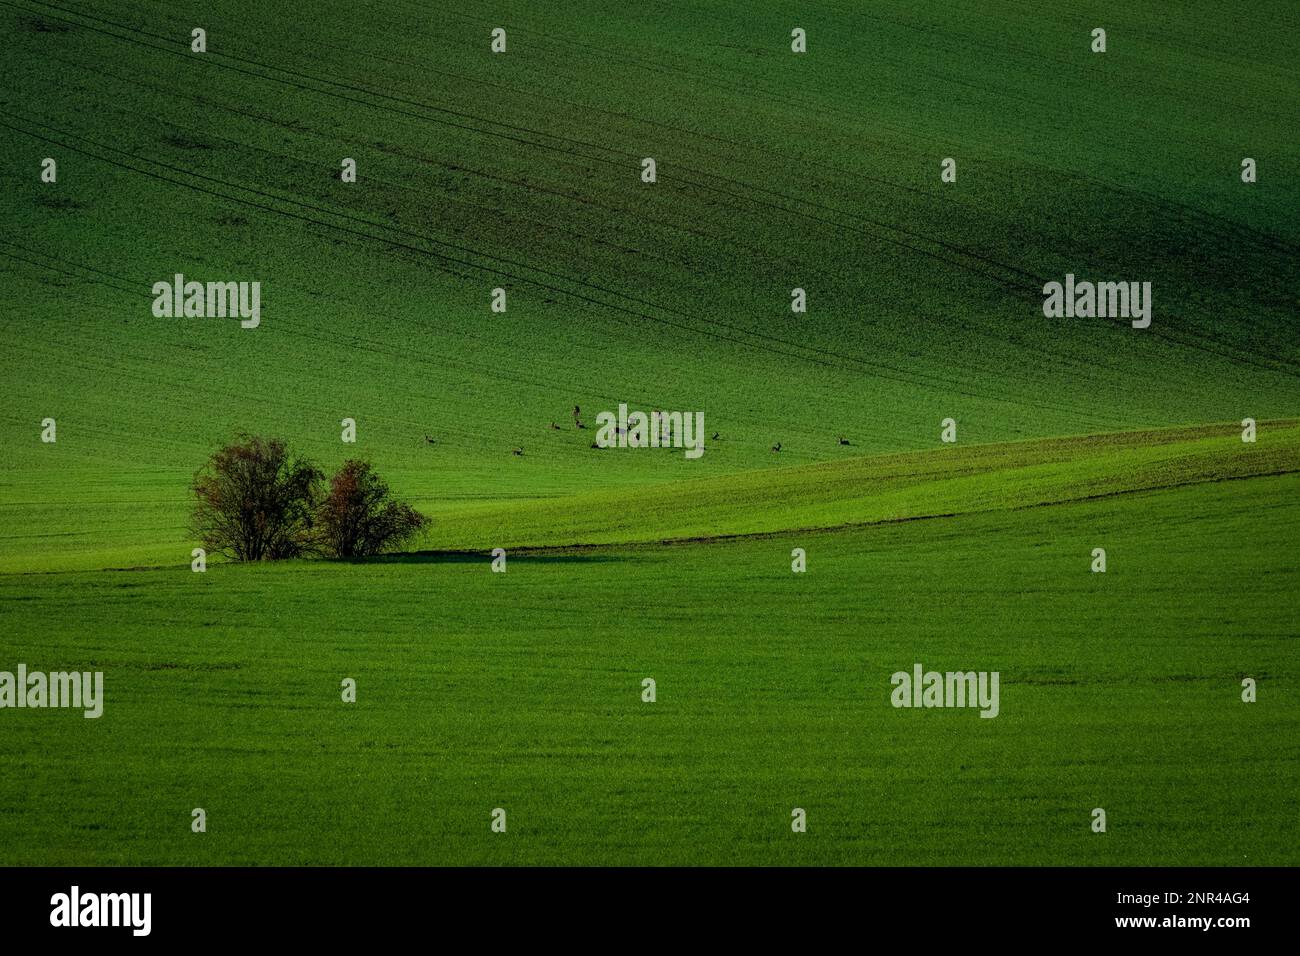 Hirsche auf den grünen tschechischen mährischen Feldern. Tschechische republik, Mährisch, Tschechische republik Stockfoto